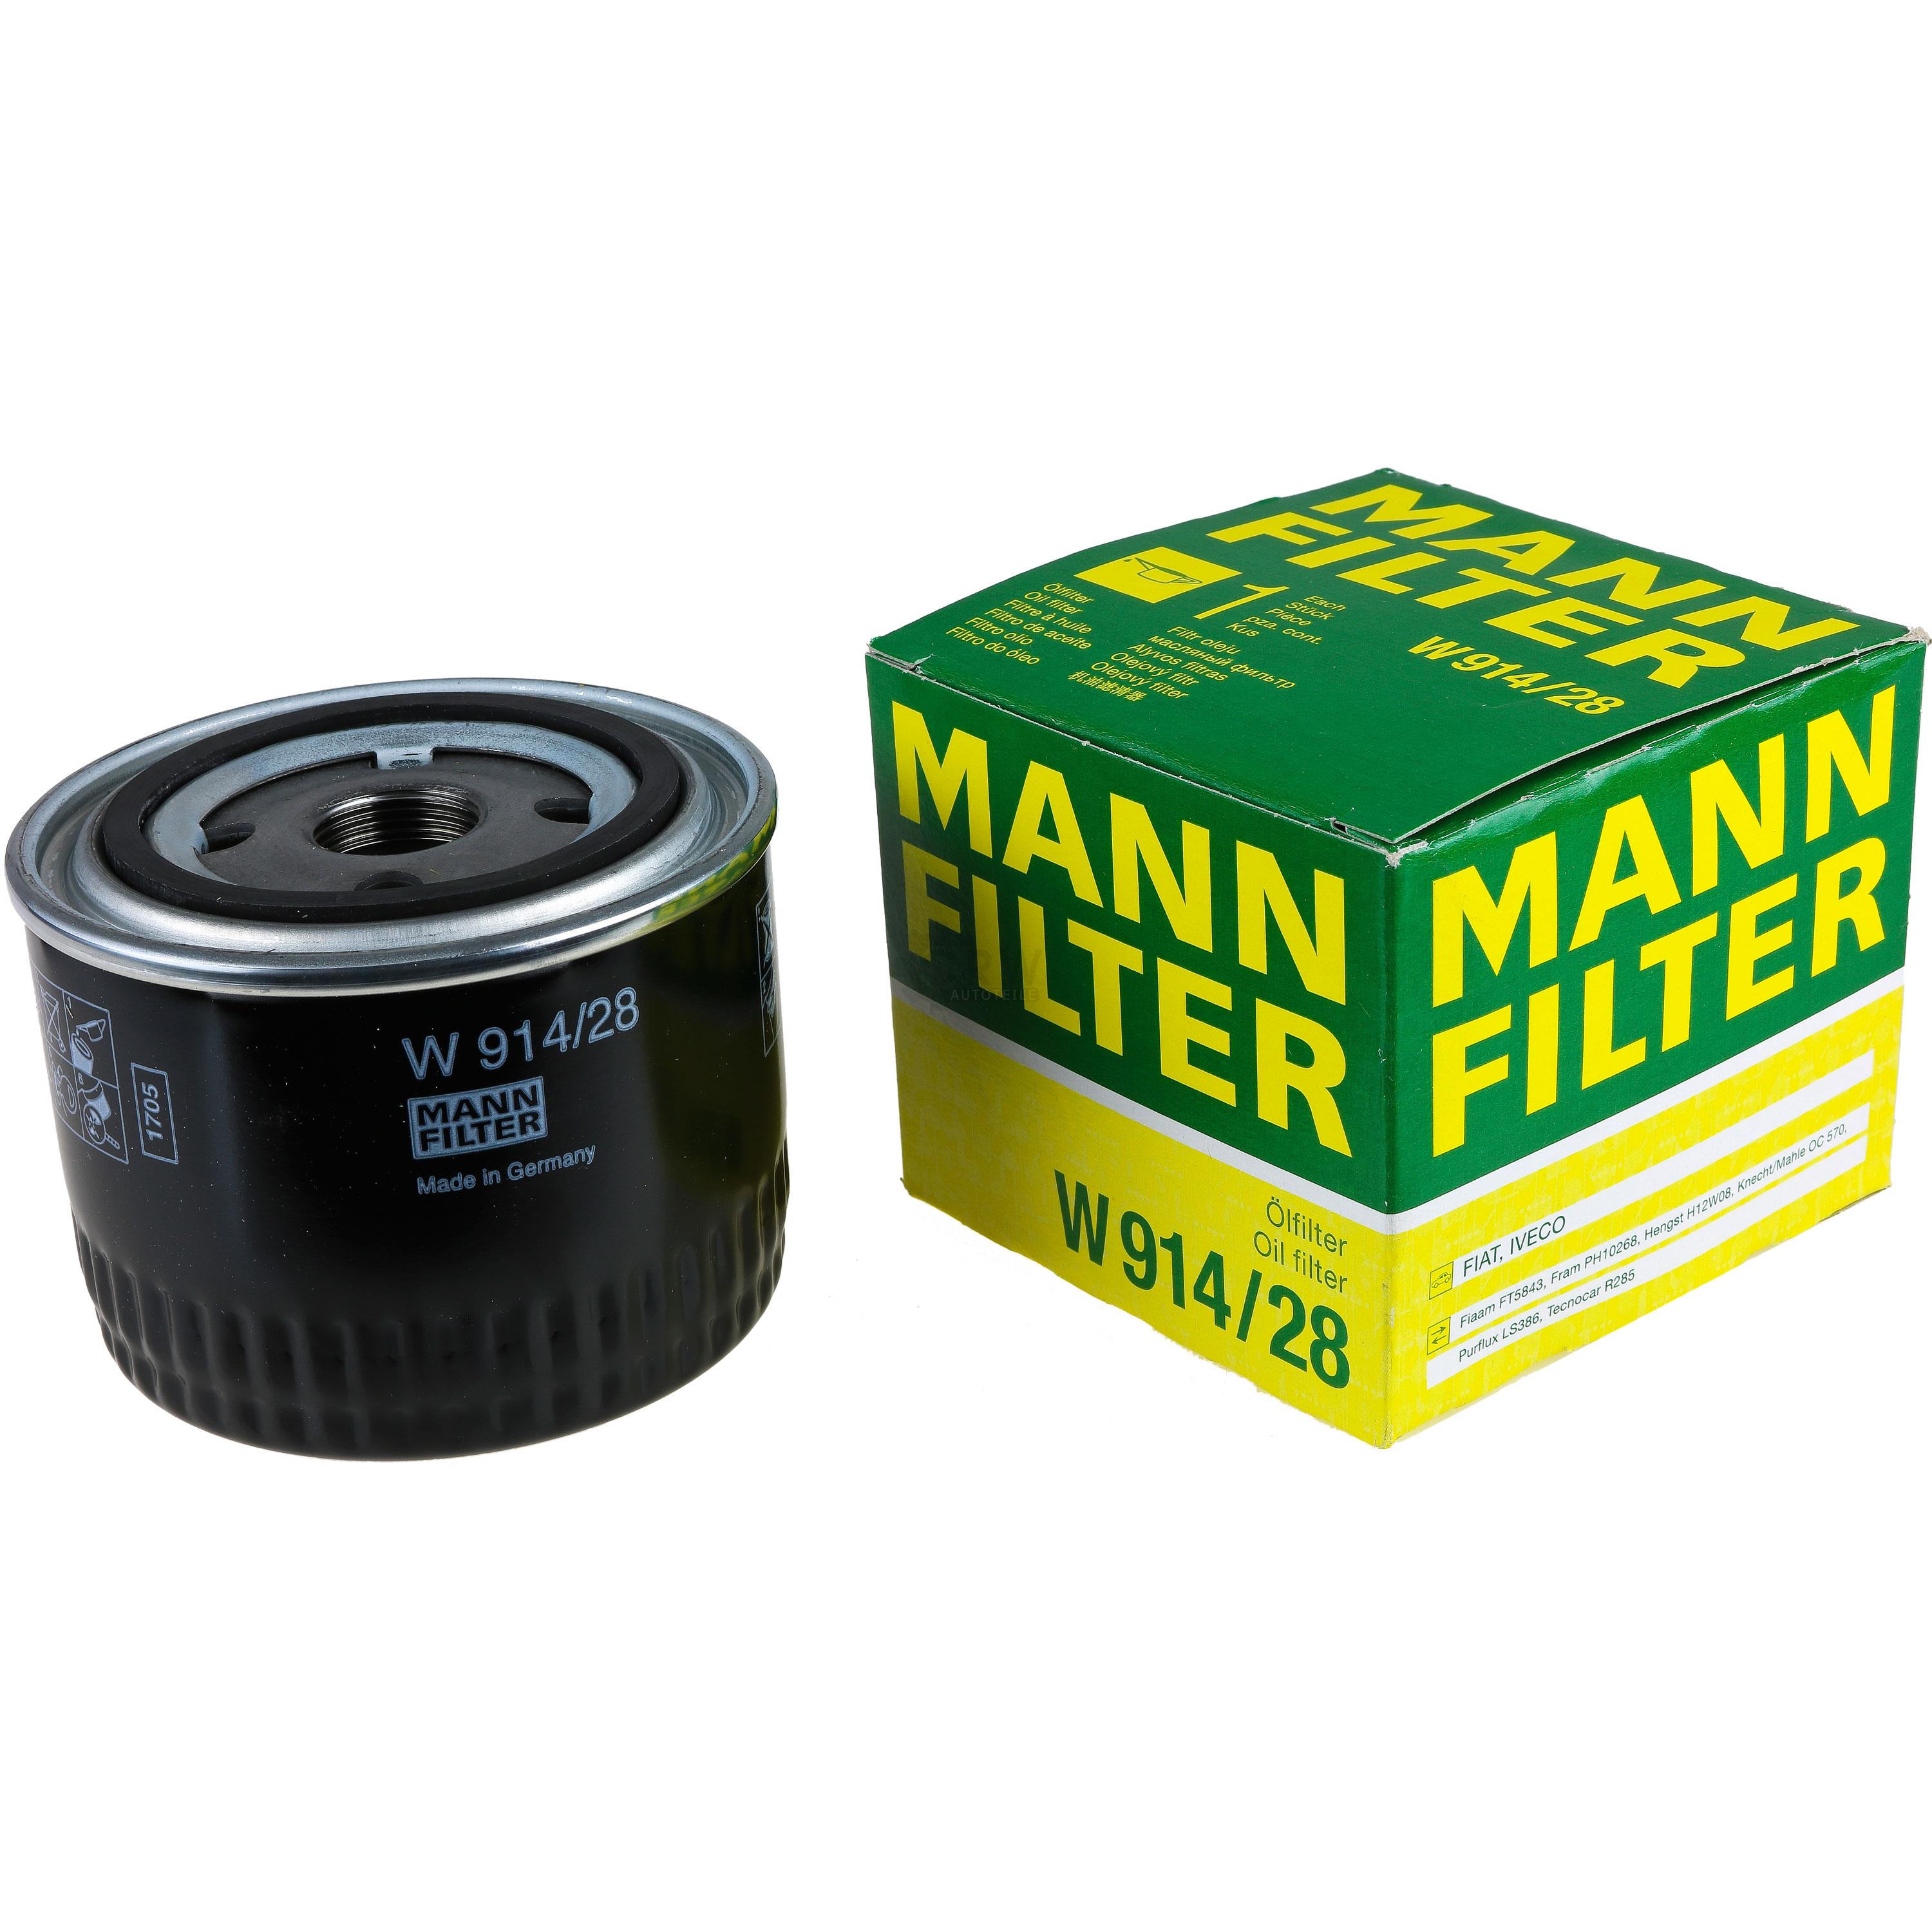 MANN Ölfilter W 914/28 Oil Filter